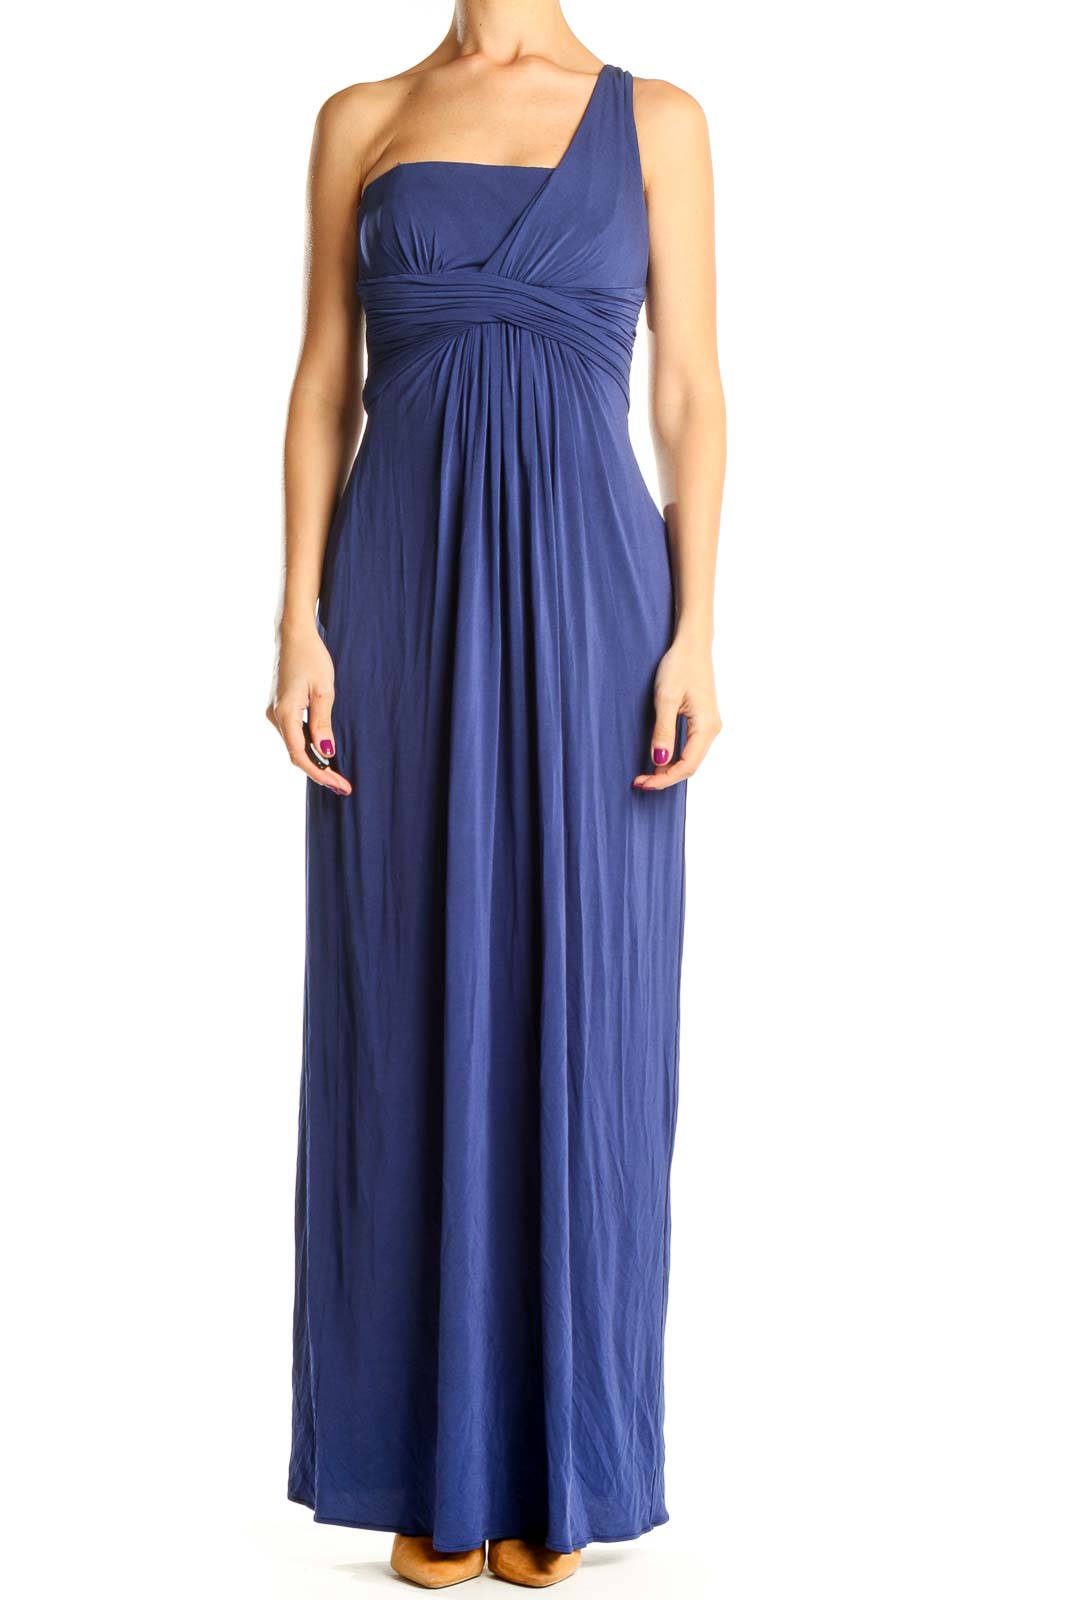 Blue One Shoulder Formal Column Dress Front